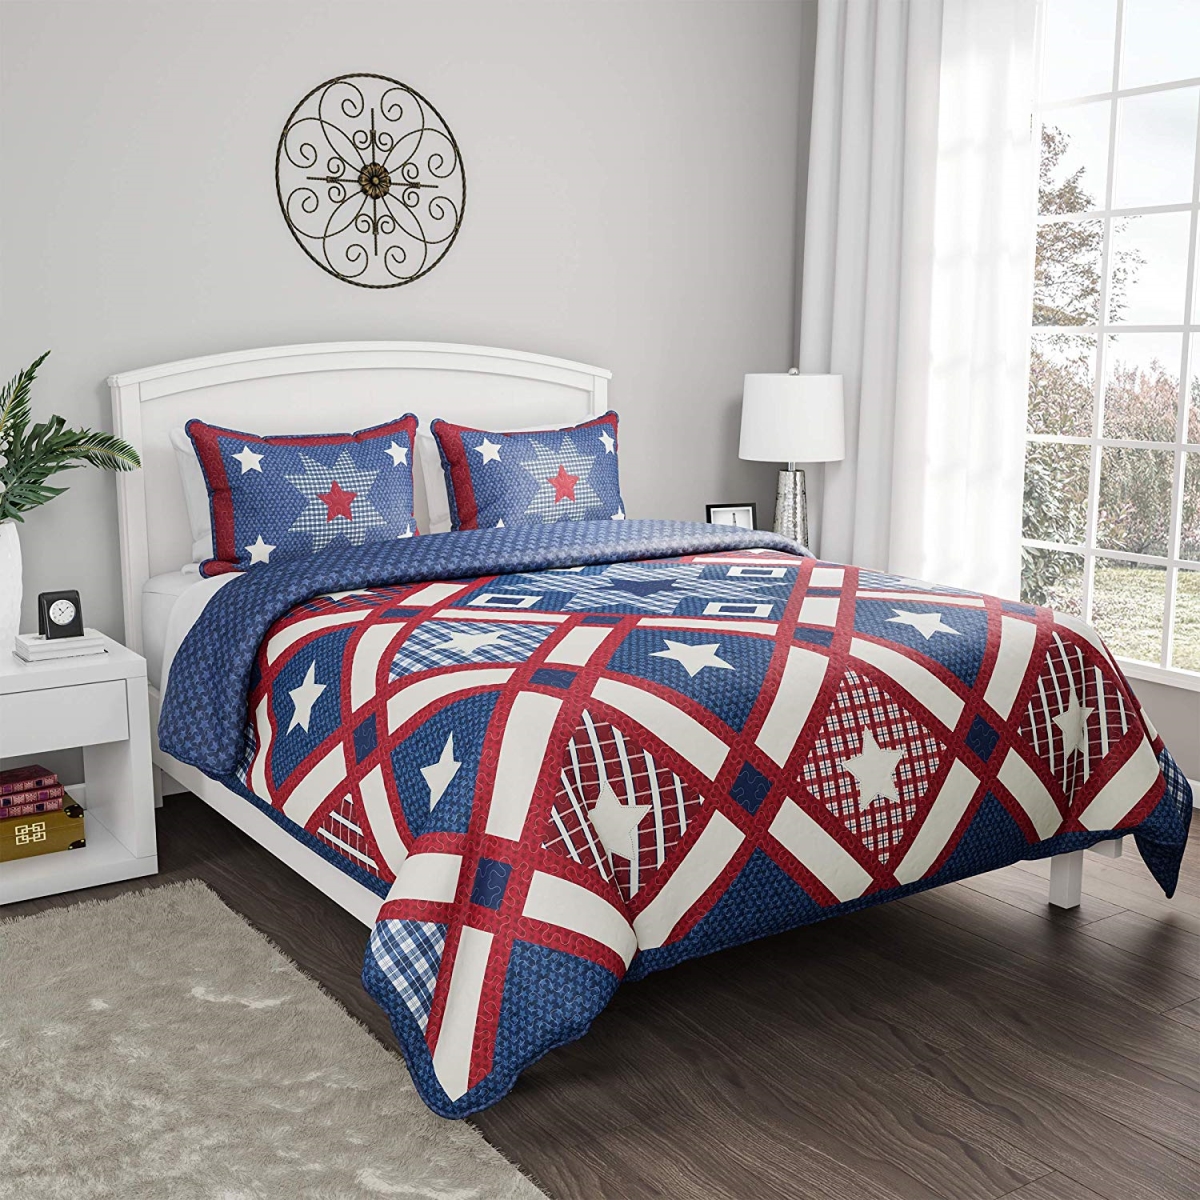 66a-18175 3 Piece Quilt & Bedding Set, Full & Queen Size